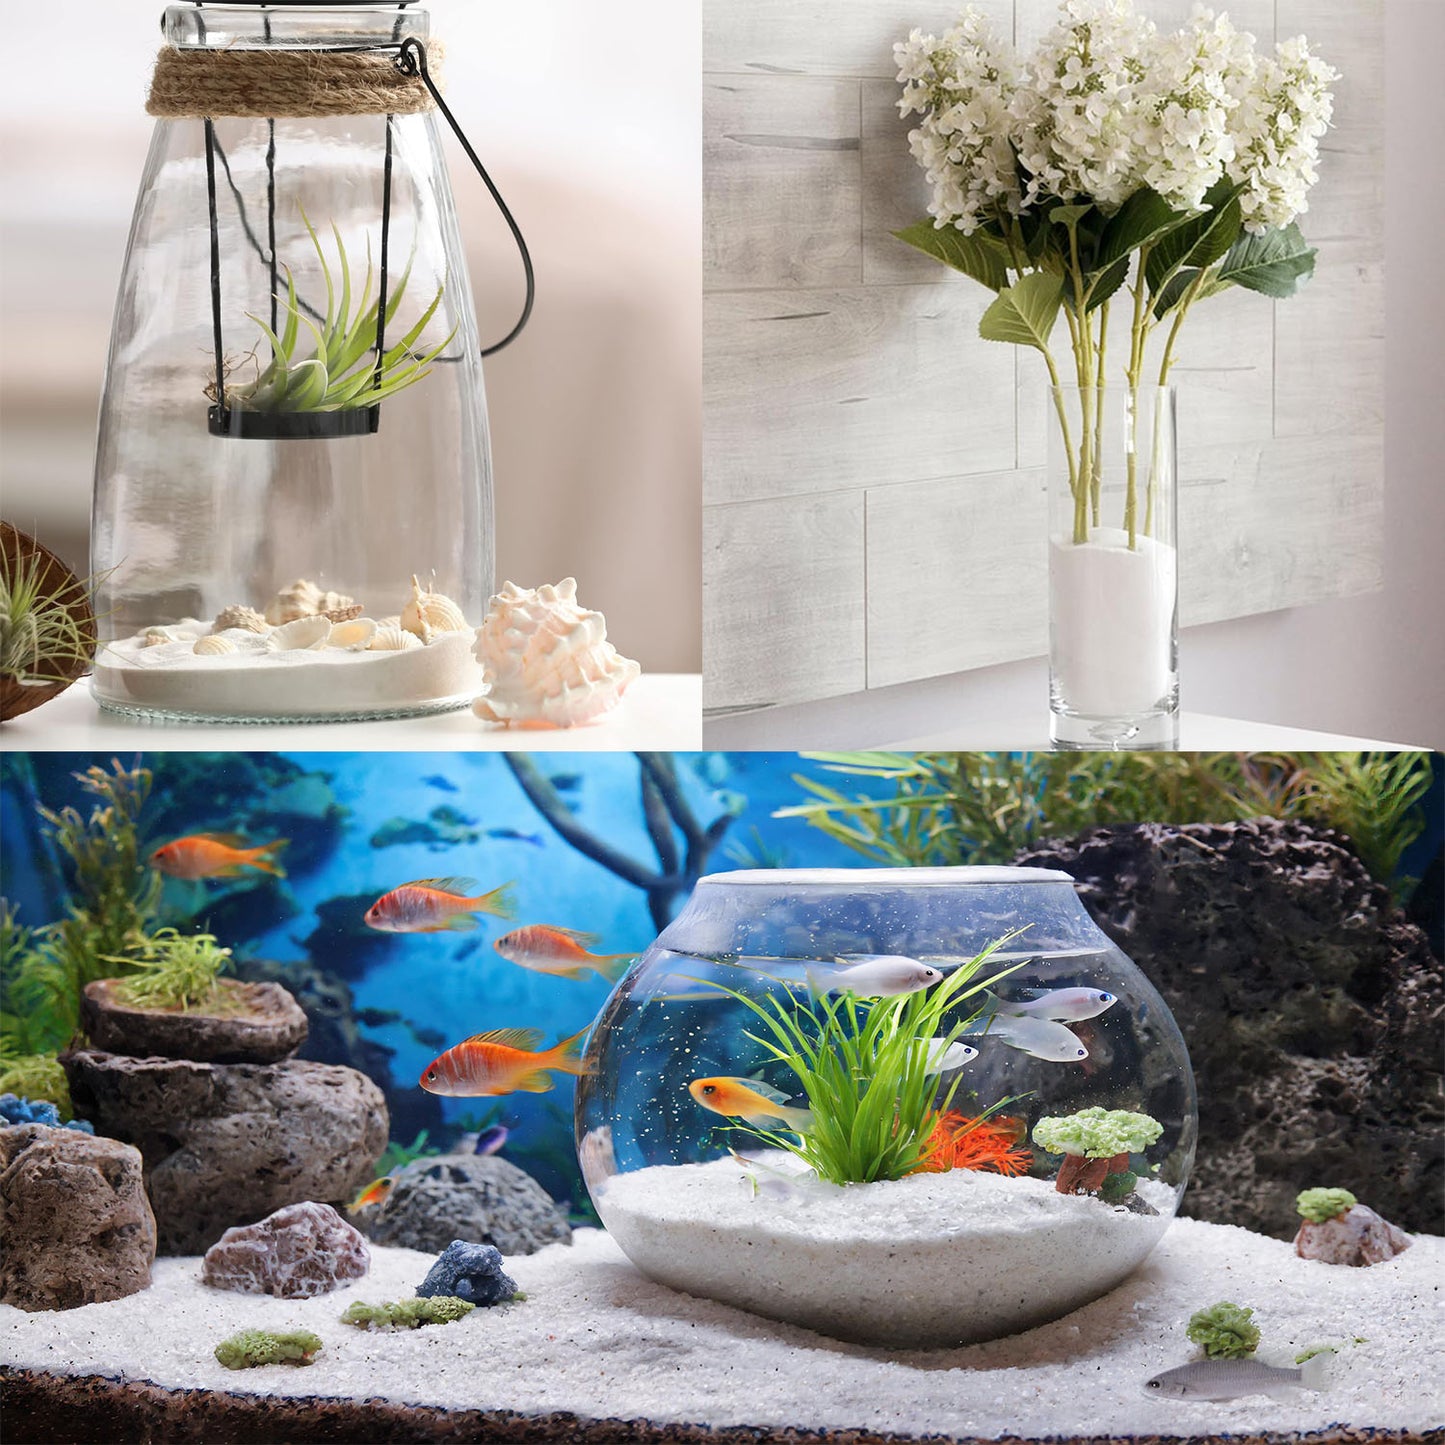 Casa De Amor White Sand Aquarium, Natural Sugar Size for Aquarium Decoration/ Home & Garden/ Lawn / Terrarium/ Quartz